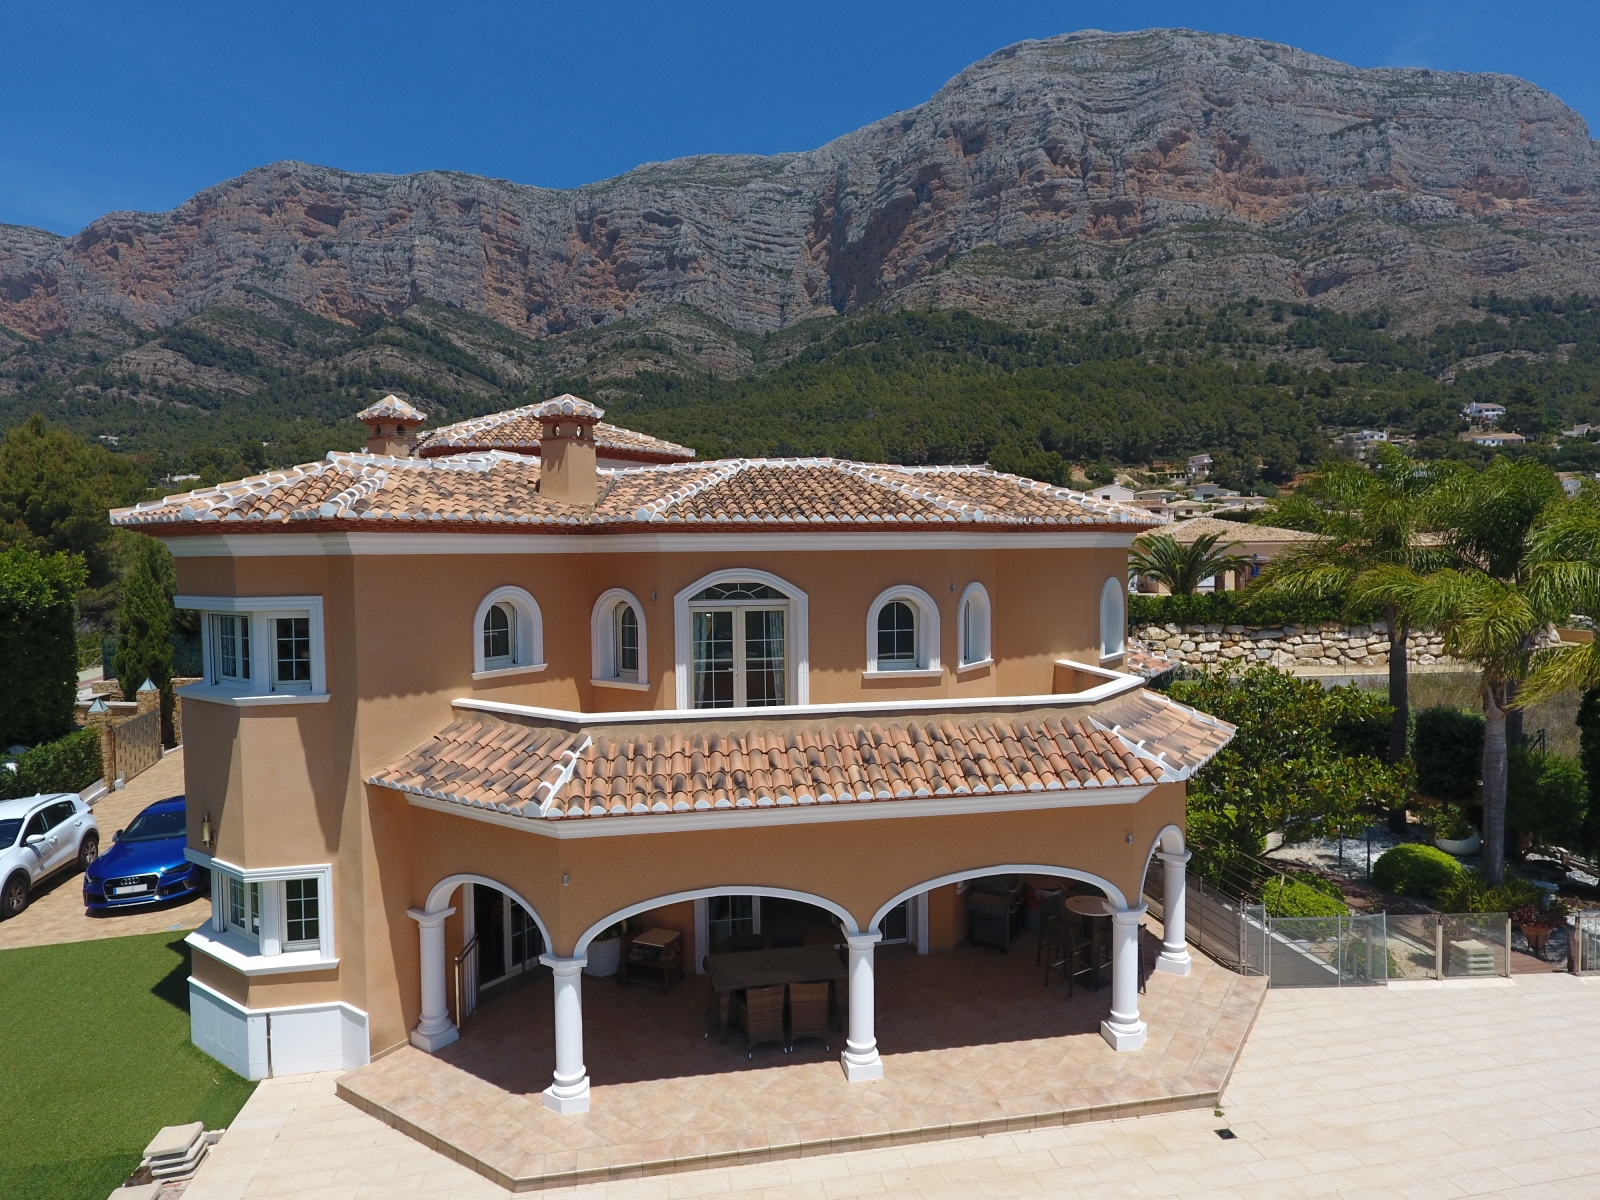 Erstklassige Villa mit Infinity-Pool, Barbecue, Spielplatz, Doppelgarage, Keller, Garten, Balkon, Terrasse, viele Details, auf der Südseite von Montgó.